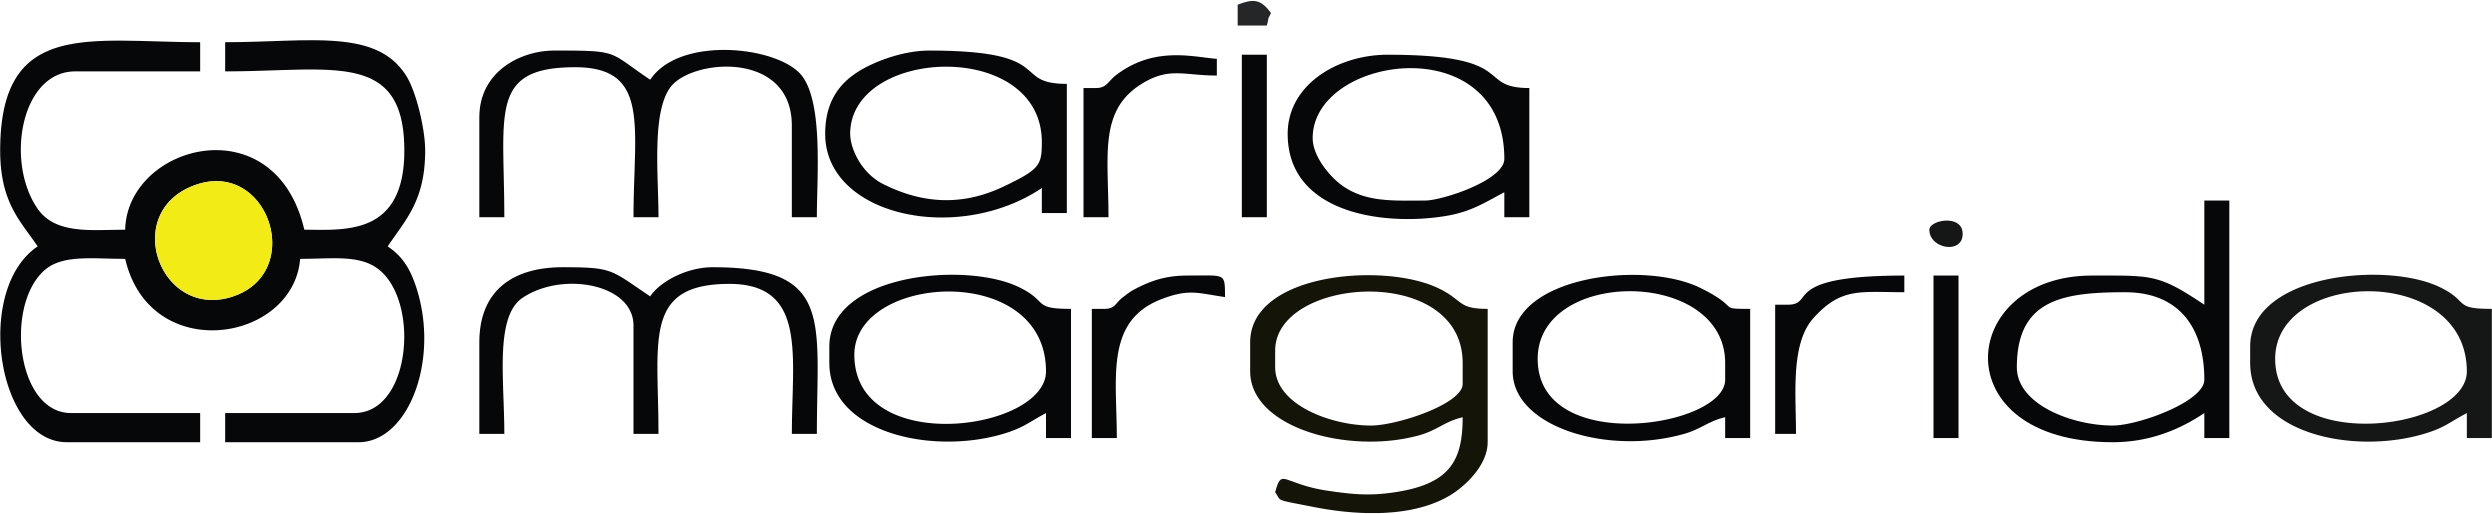 logo-2-1.png